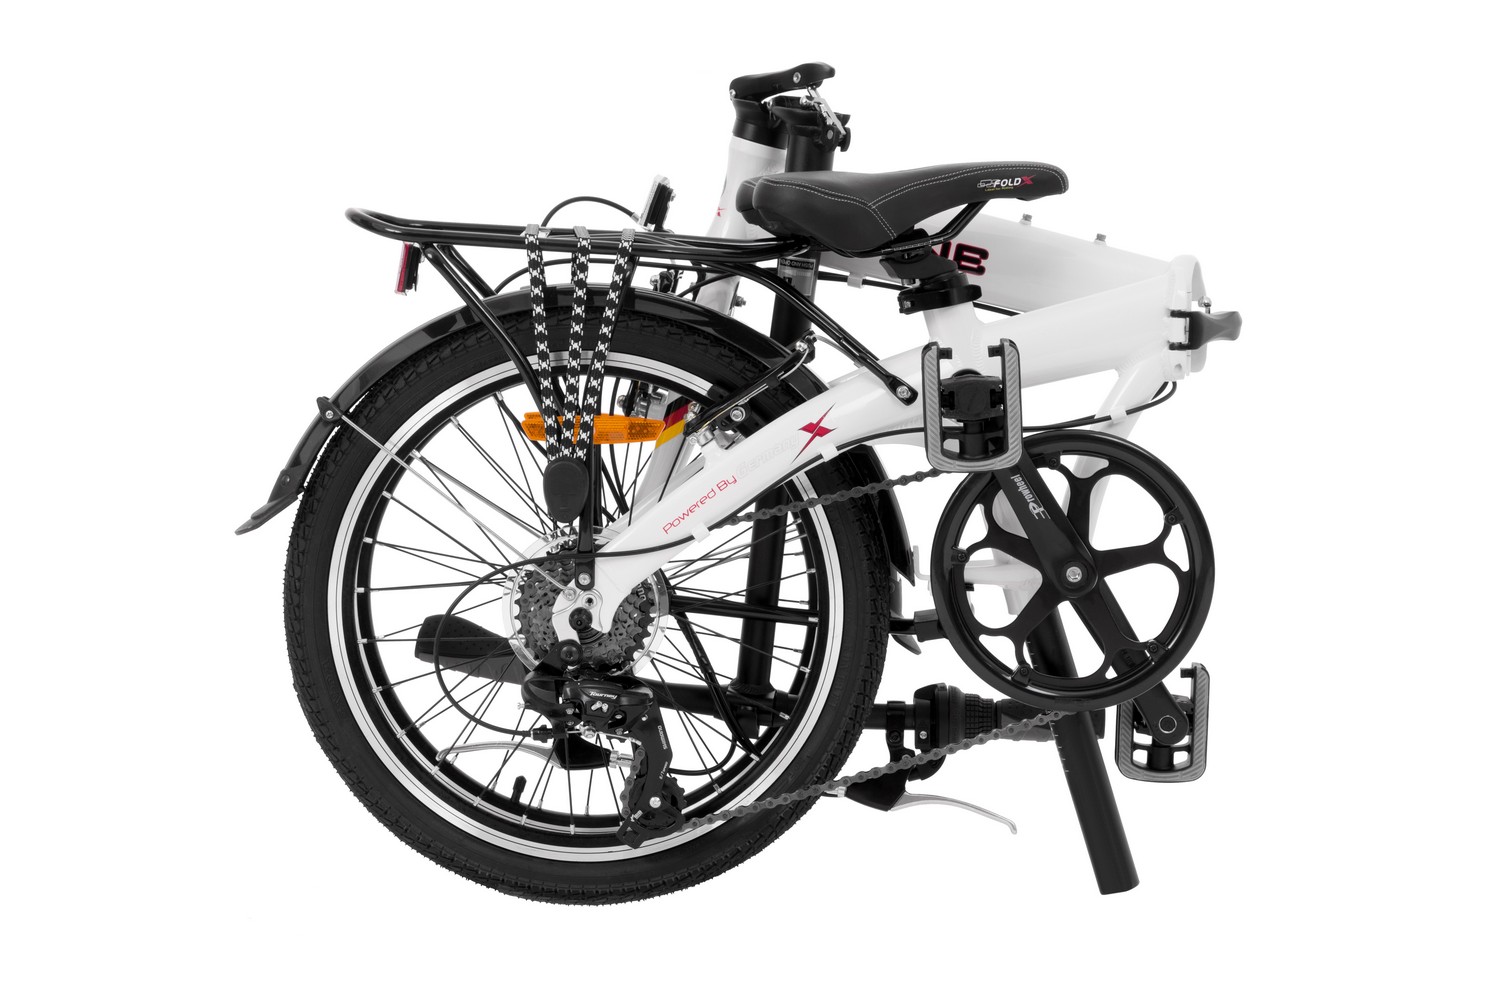 Складной велосипед Foldx FoldX Line, год 2021, цвет Белый